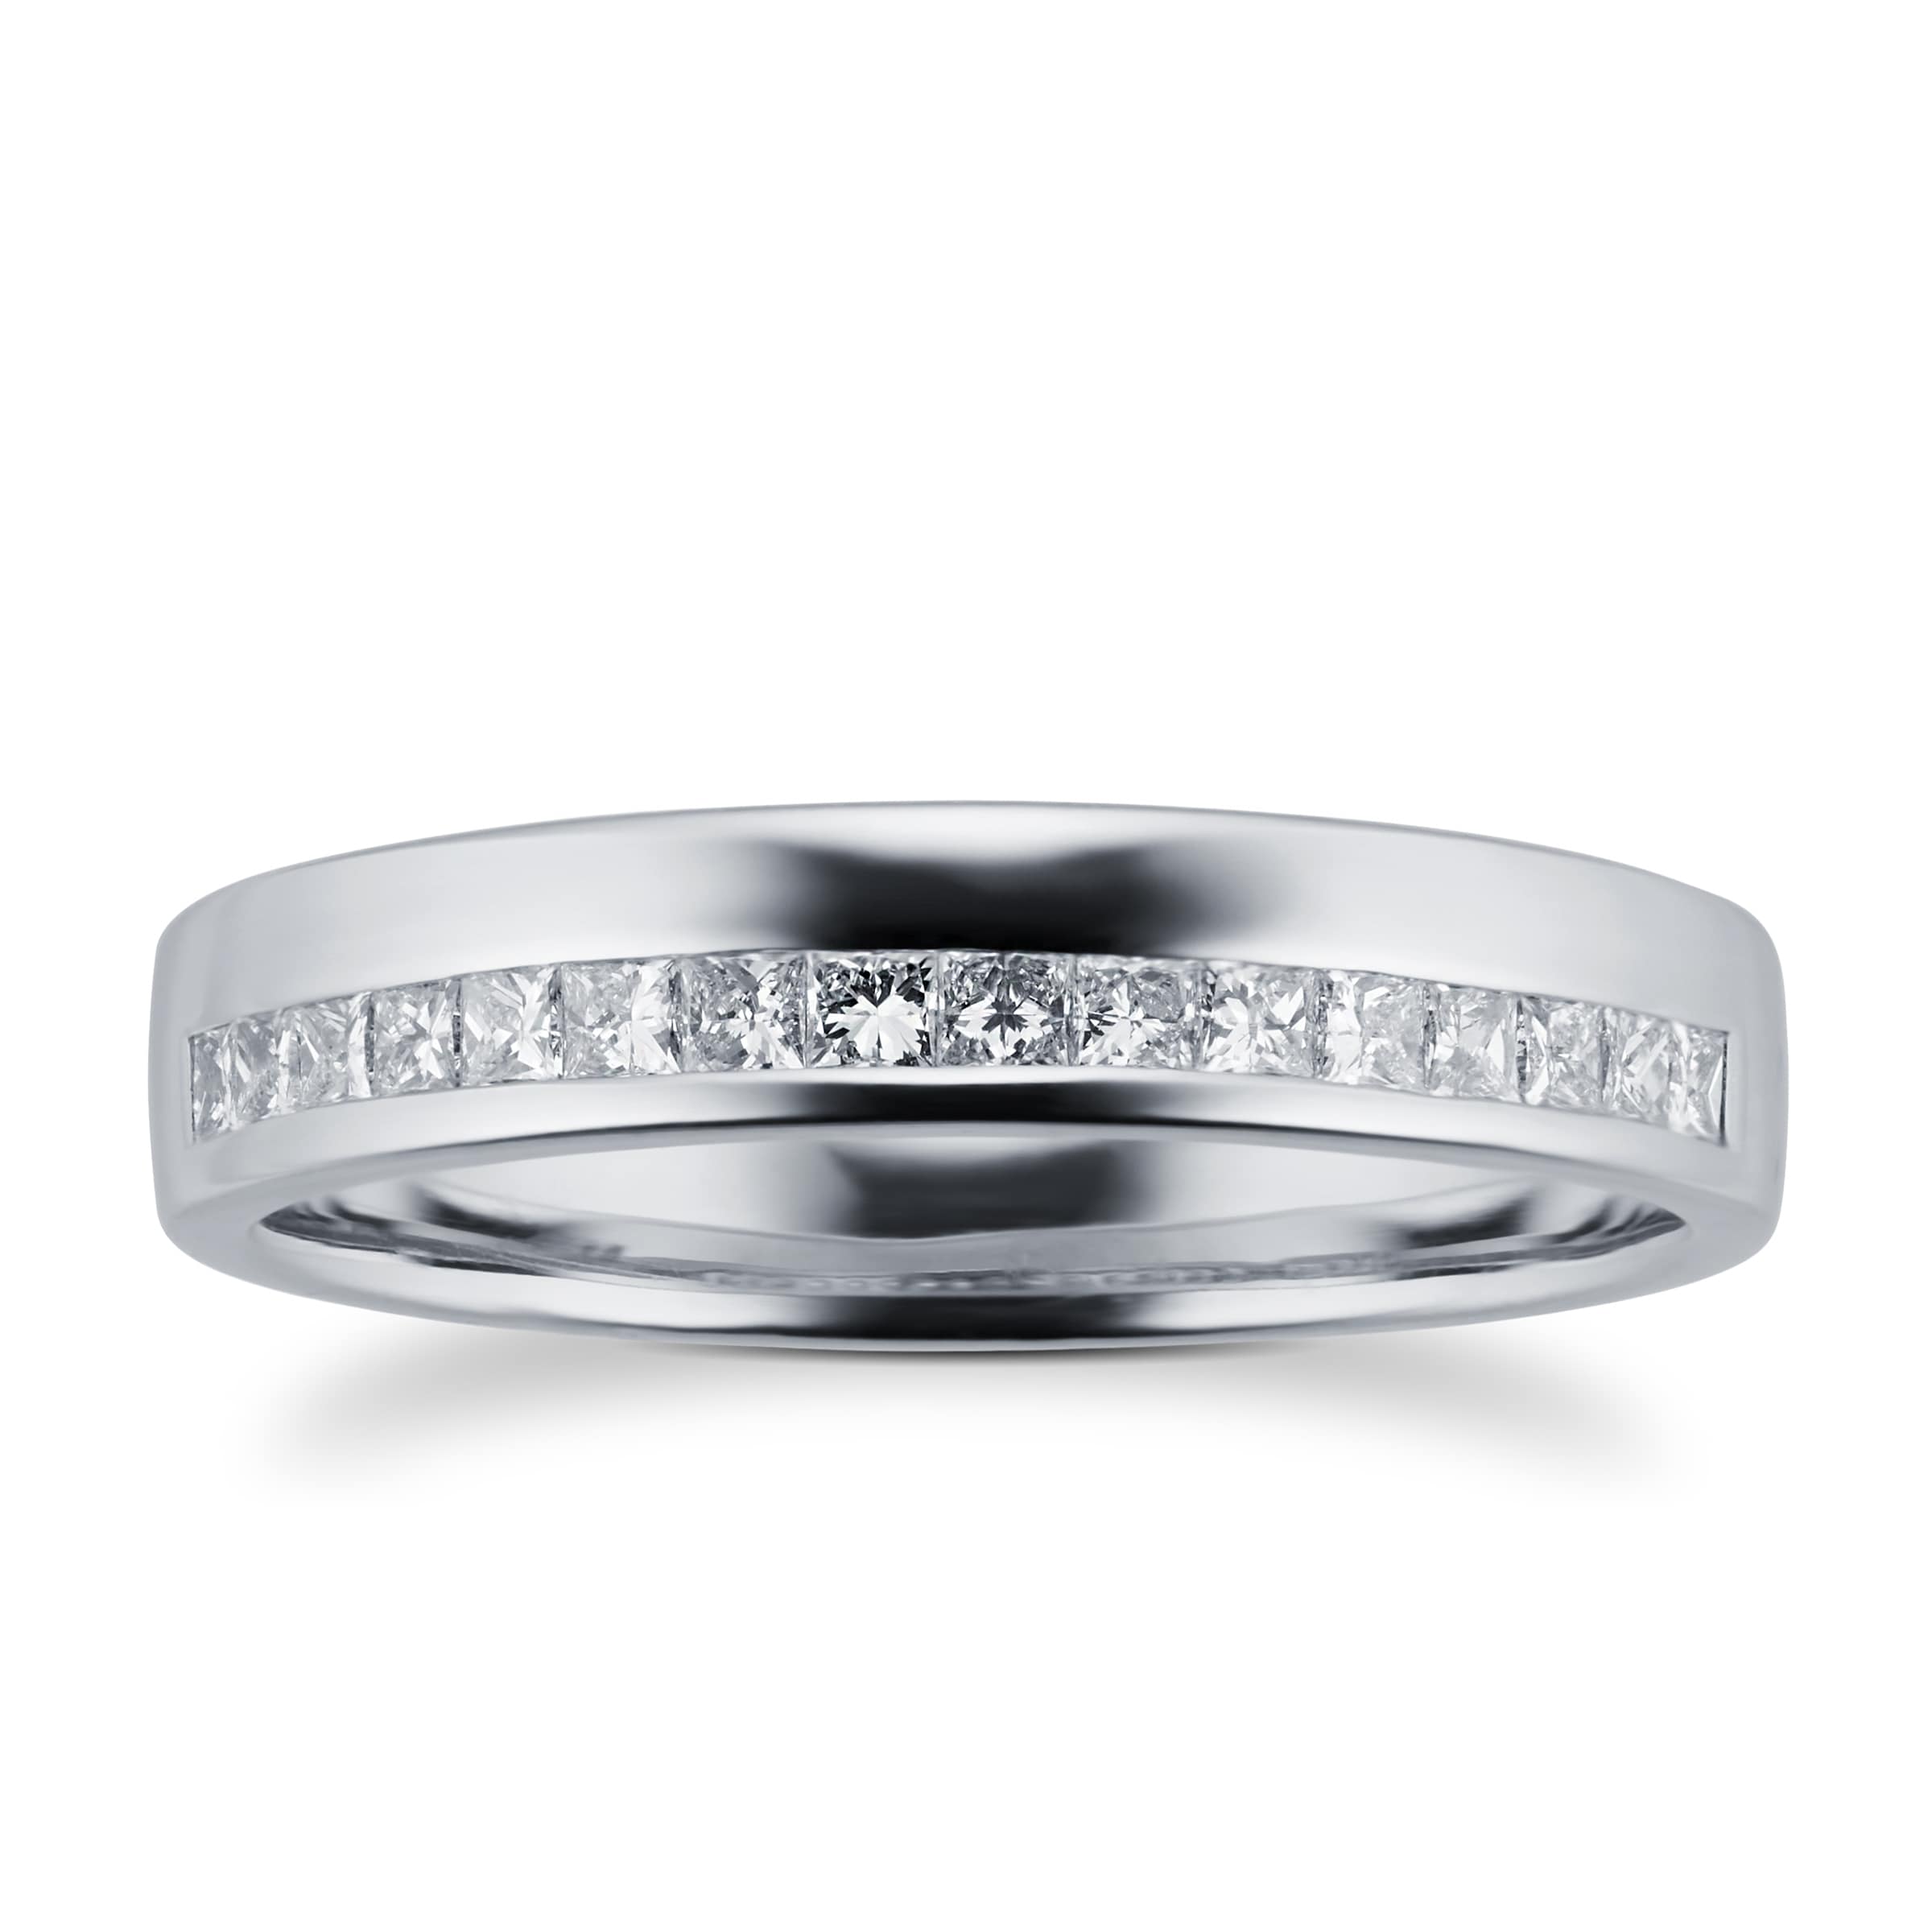 Princess Cut 0.33 Total Carat Weight Diamond Ladies Wedding Ring Set In Platinum - Ring Size J